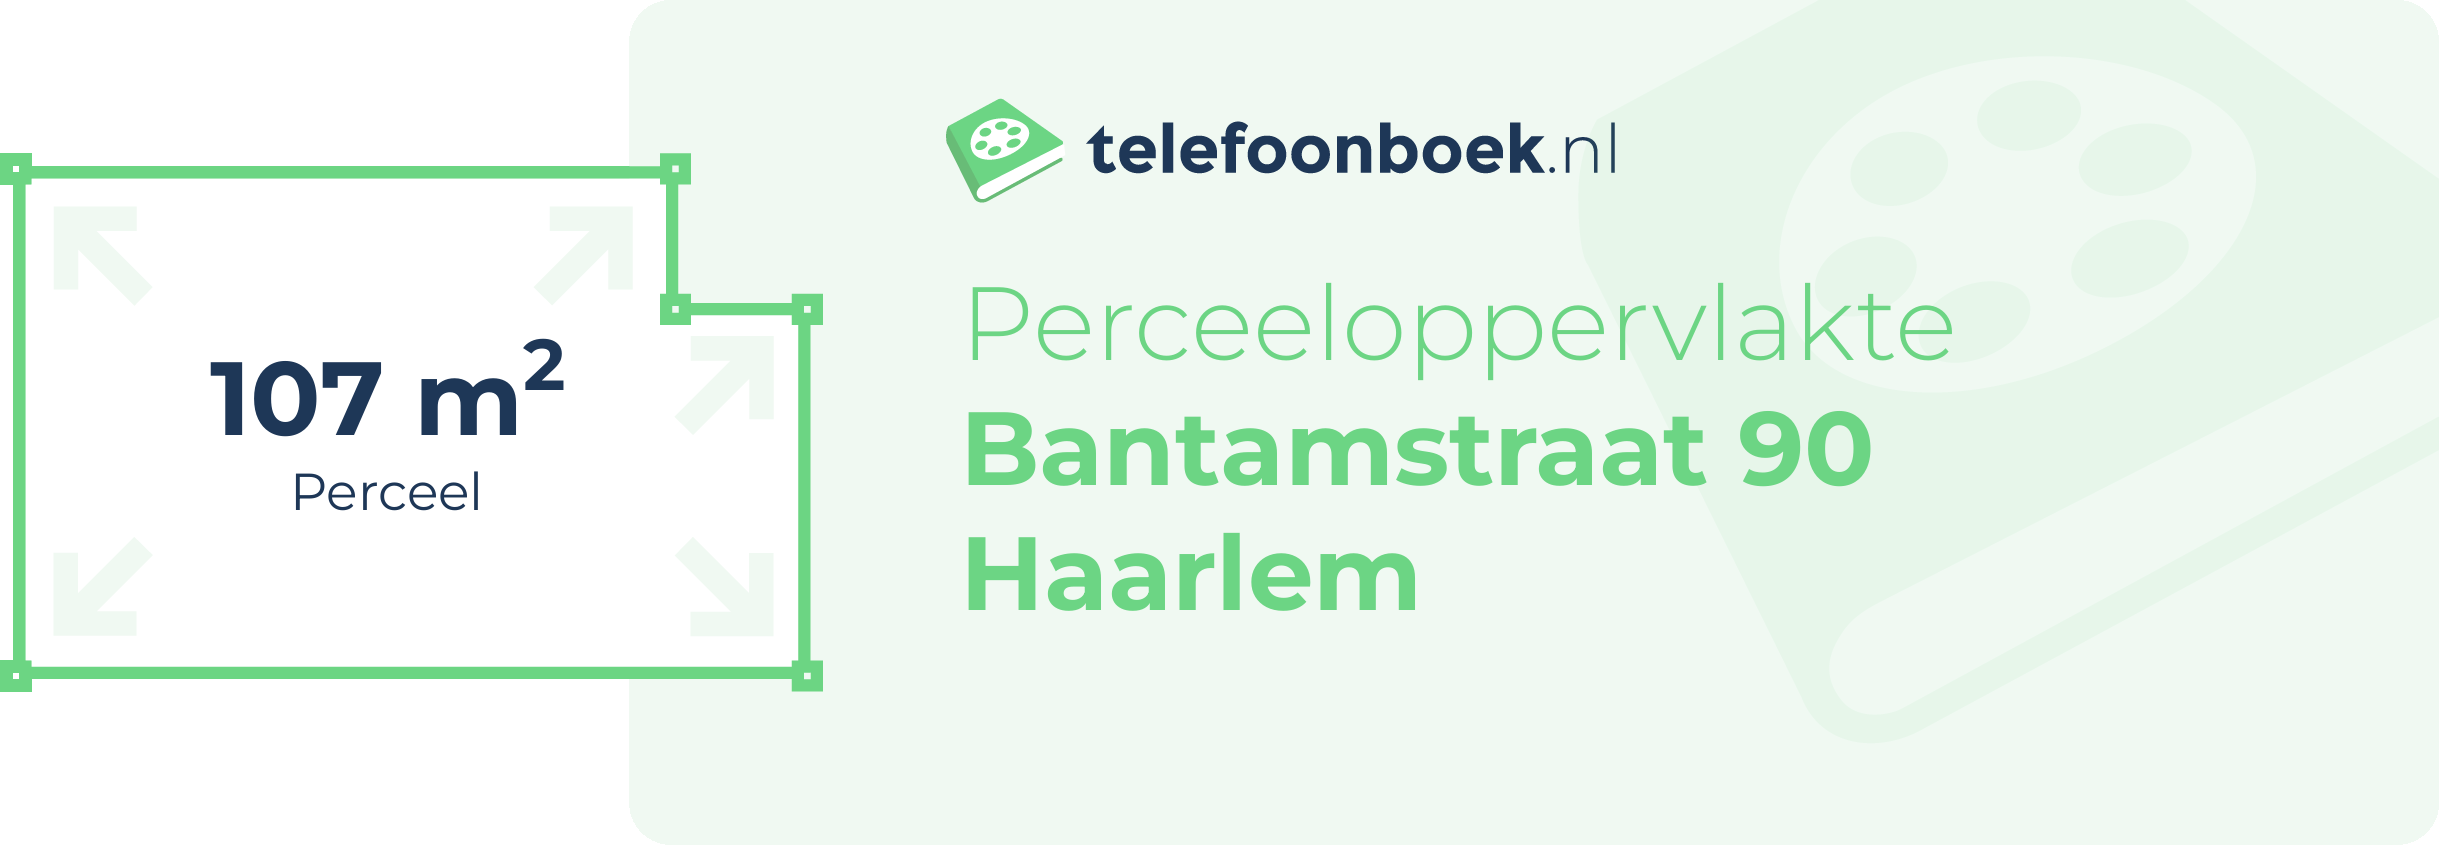 Perceeloppervlakte Bantamstraat 90 Haarlem